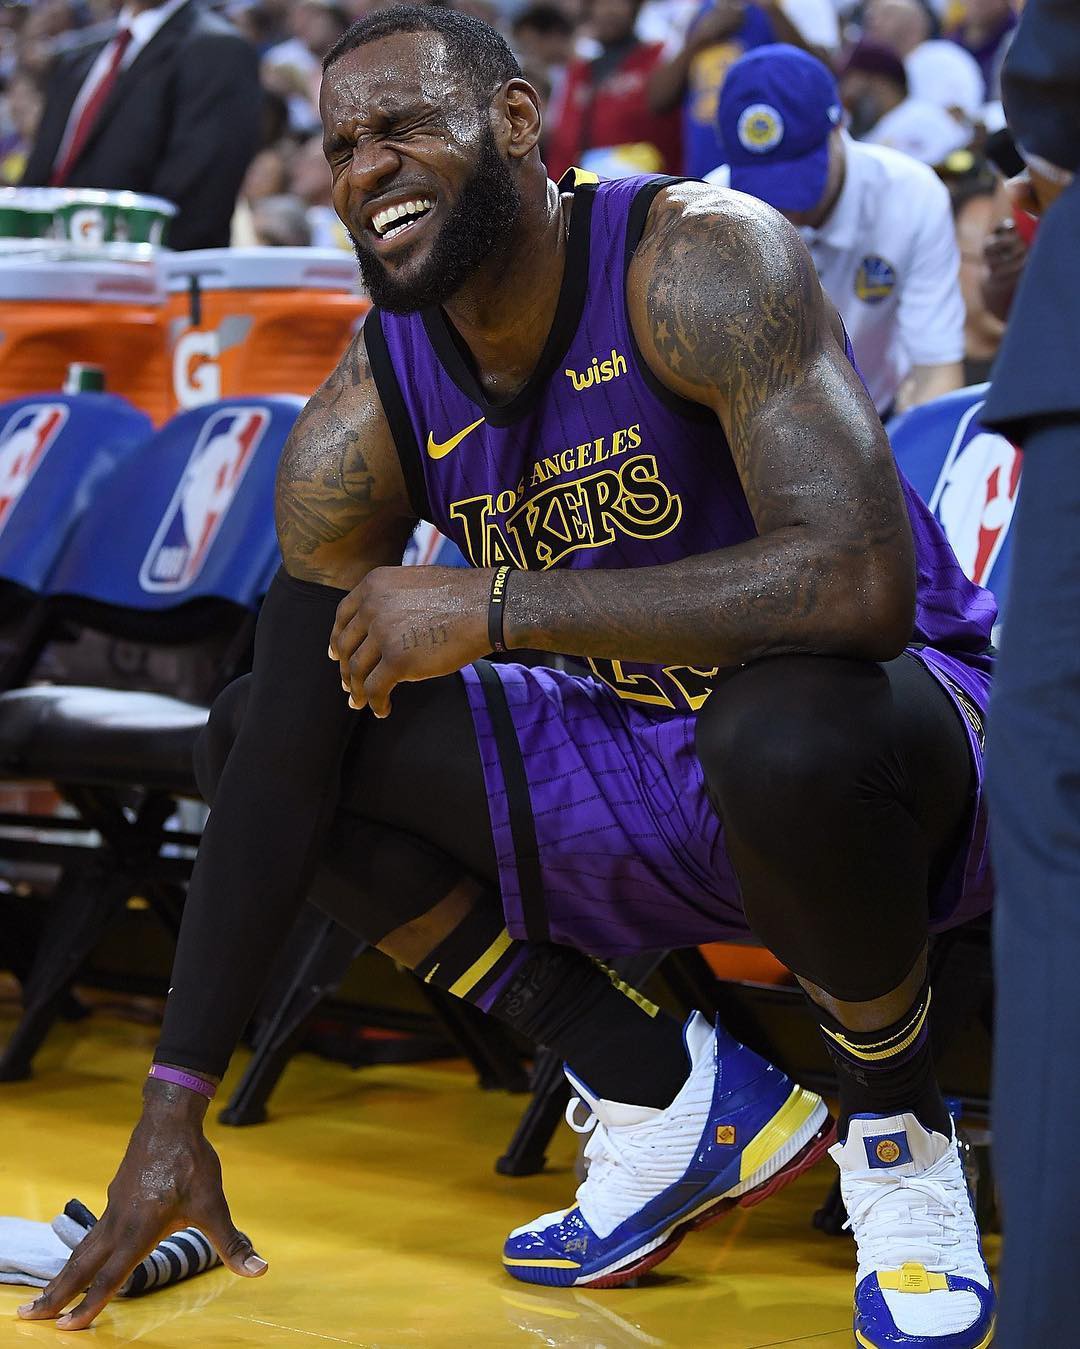 CHÍNH THỨC: Lakers công bố tình trạng chấn thương của LeBron James - Ảnh 1.